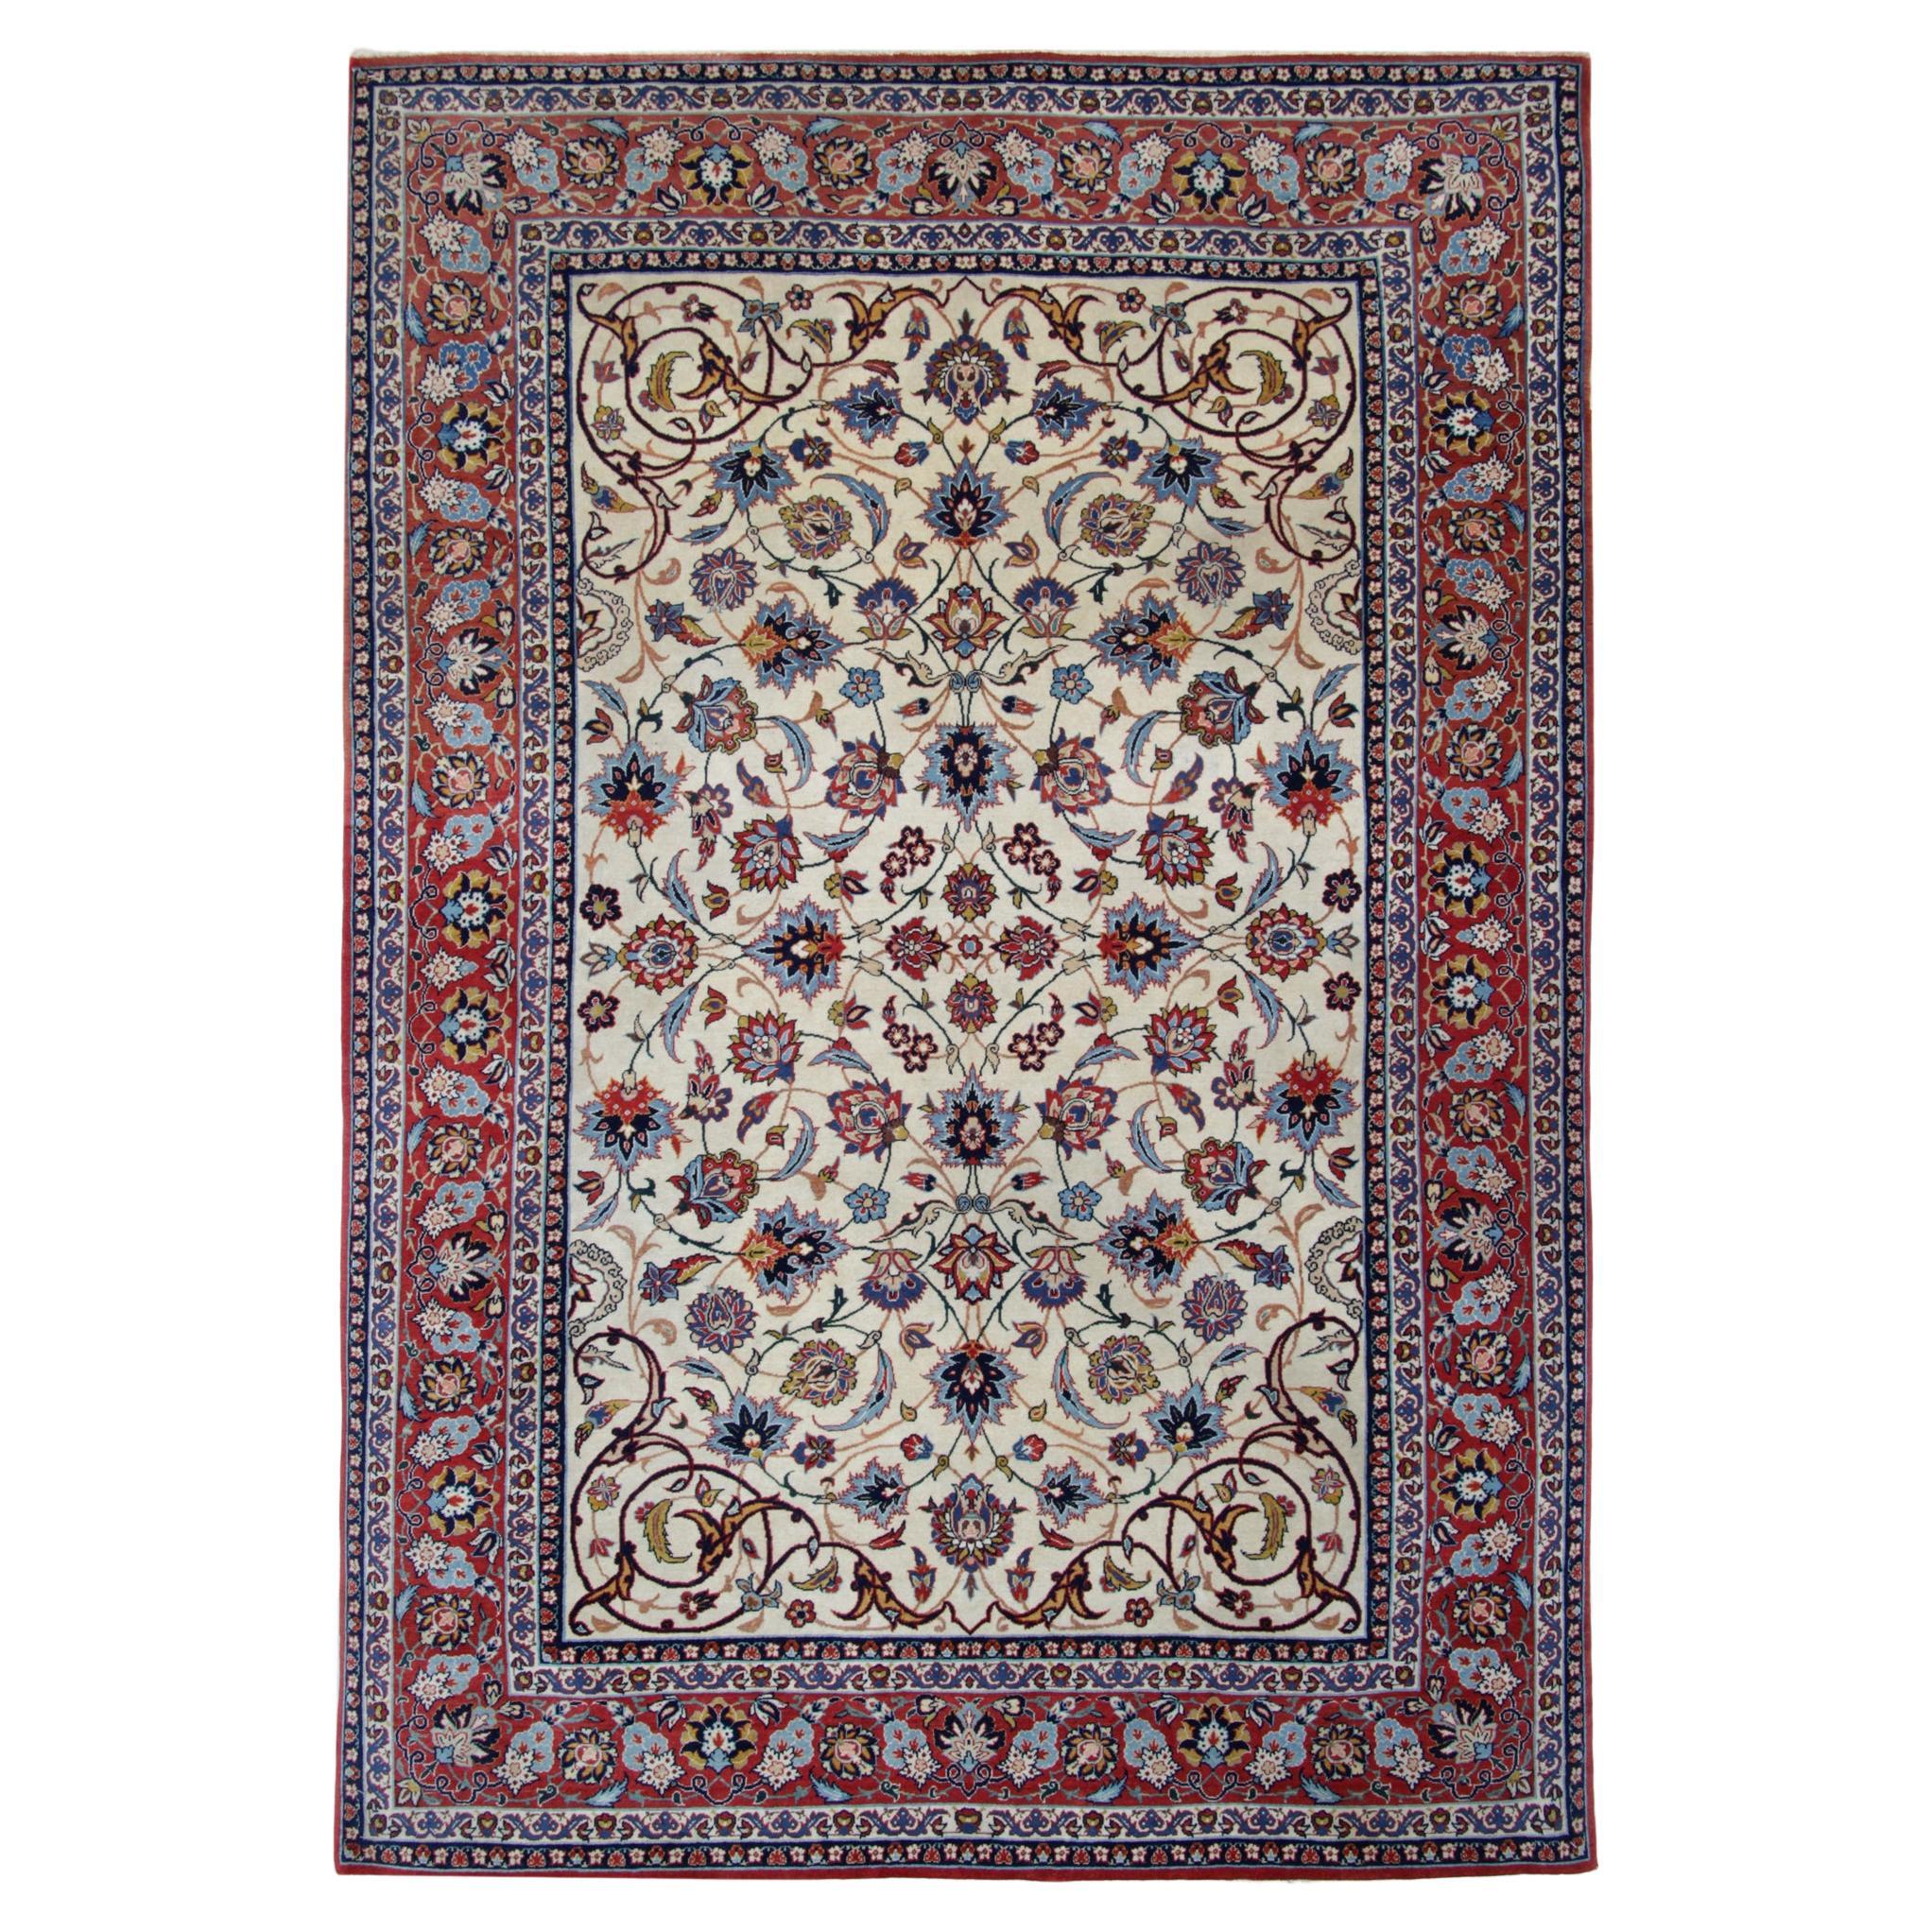 Handgewebter orientalischer Teppich in Blau, Rot und Creme, Vintage, Teppich mit Blumenmuster 206x139cm 